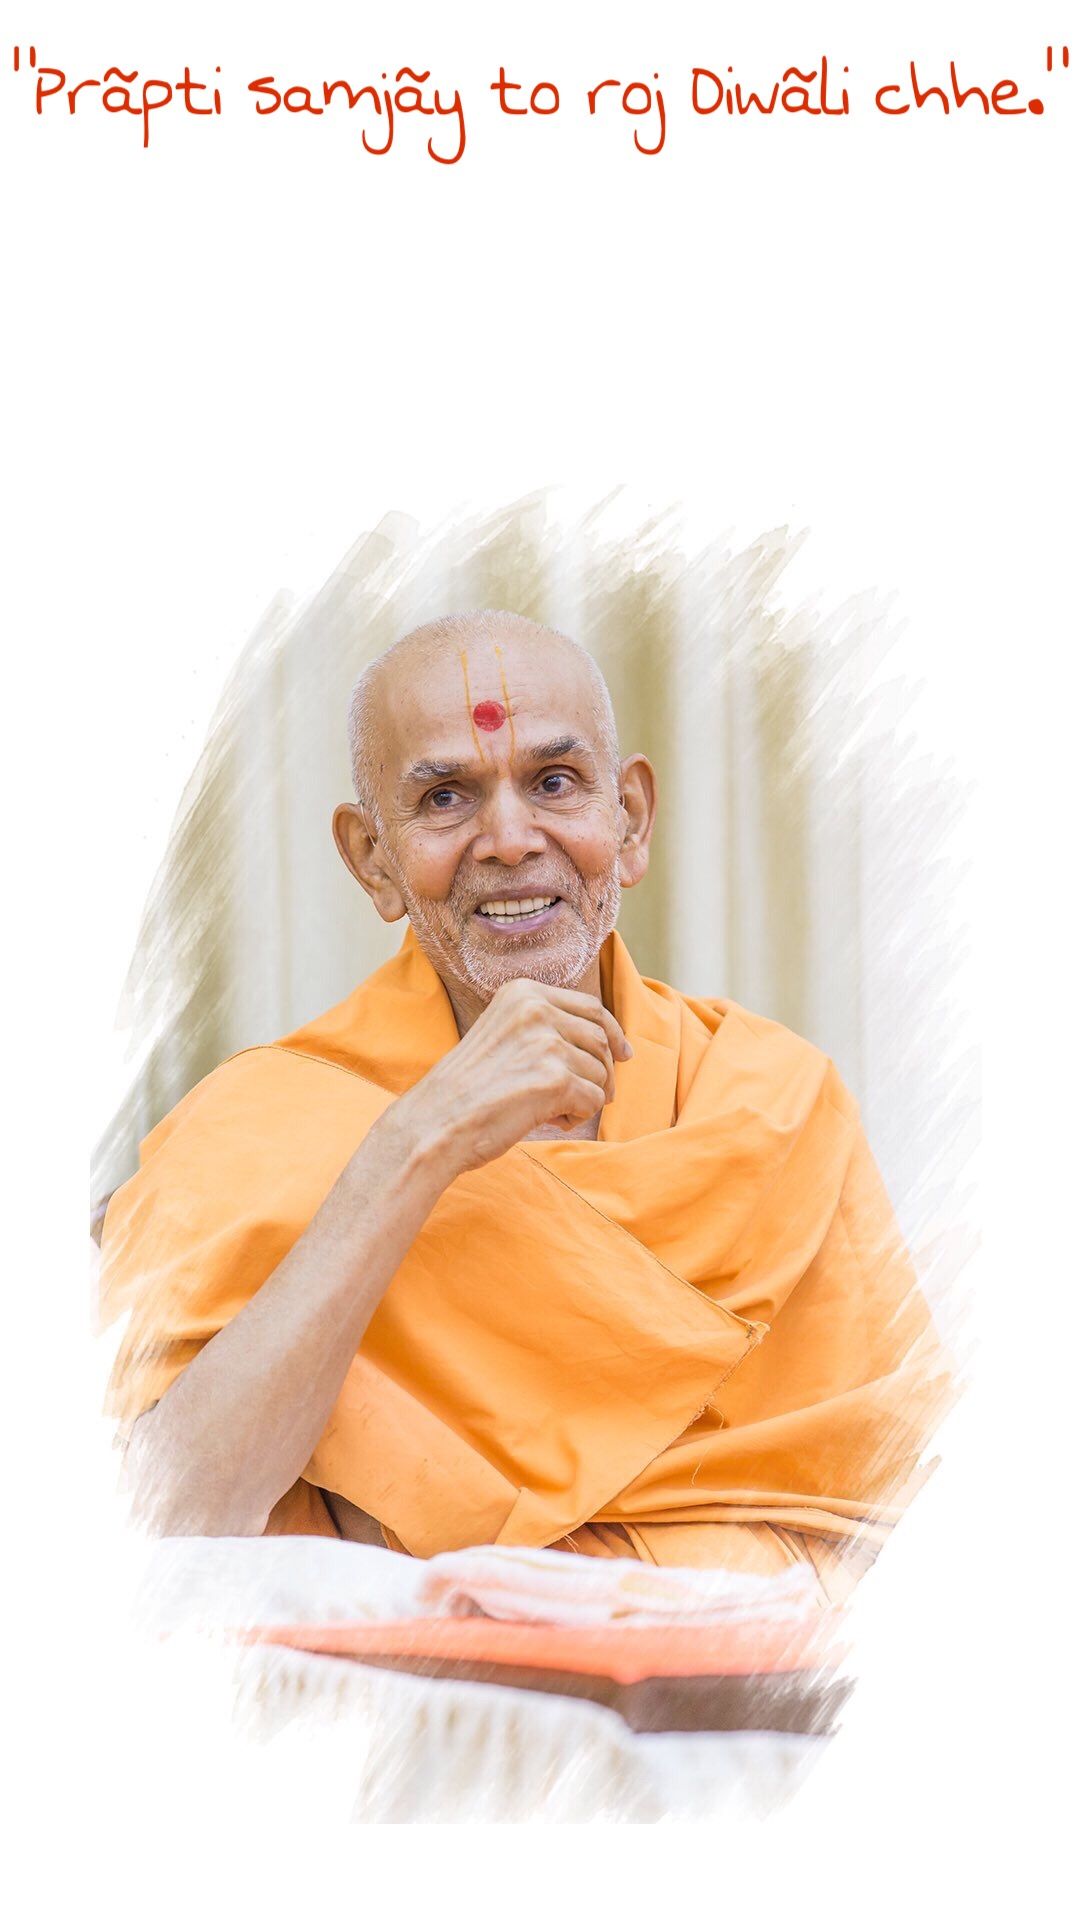 Mahant Swami Maharaj